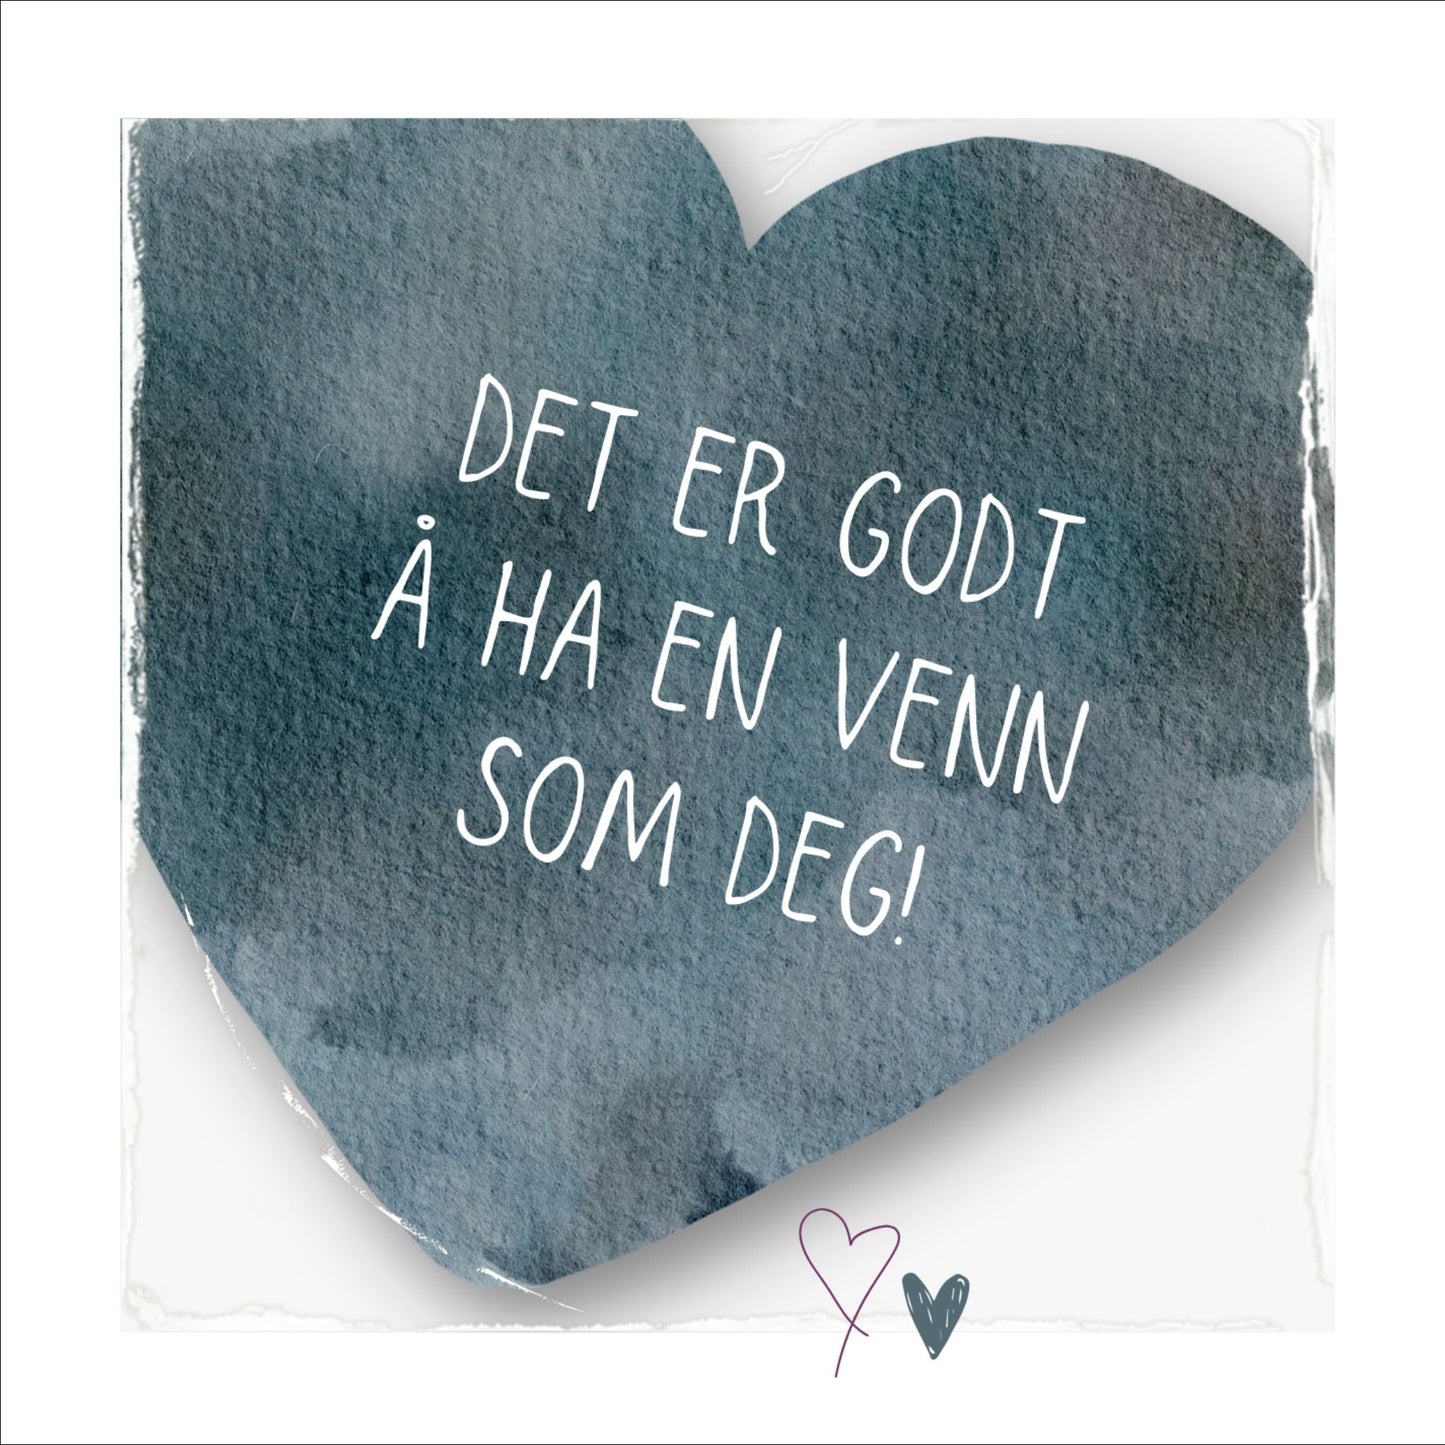 Plakat med lysegult hjerte og tekst "Det er godt å ha en venn som deg". Med hvit kant på 1,5 cm. 